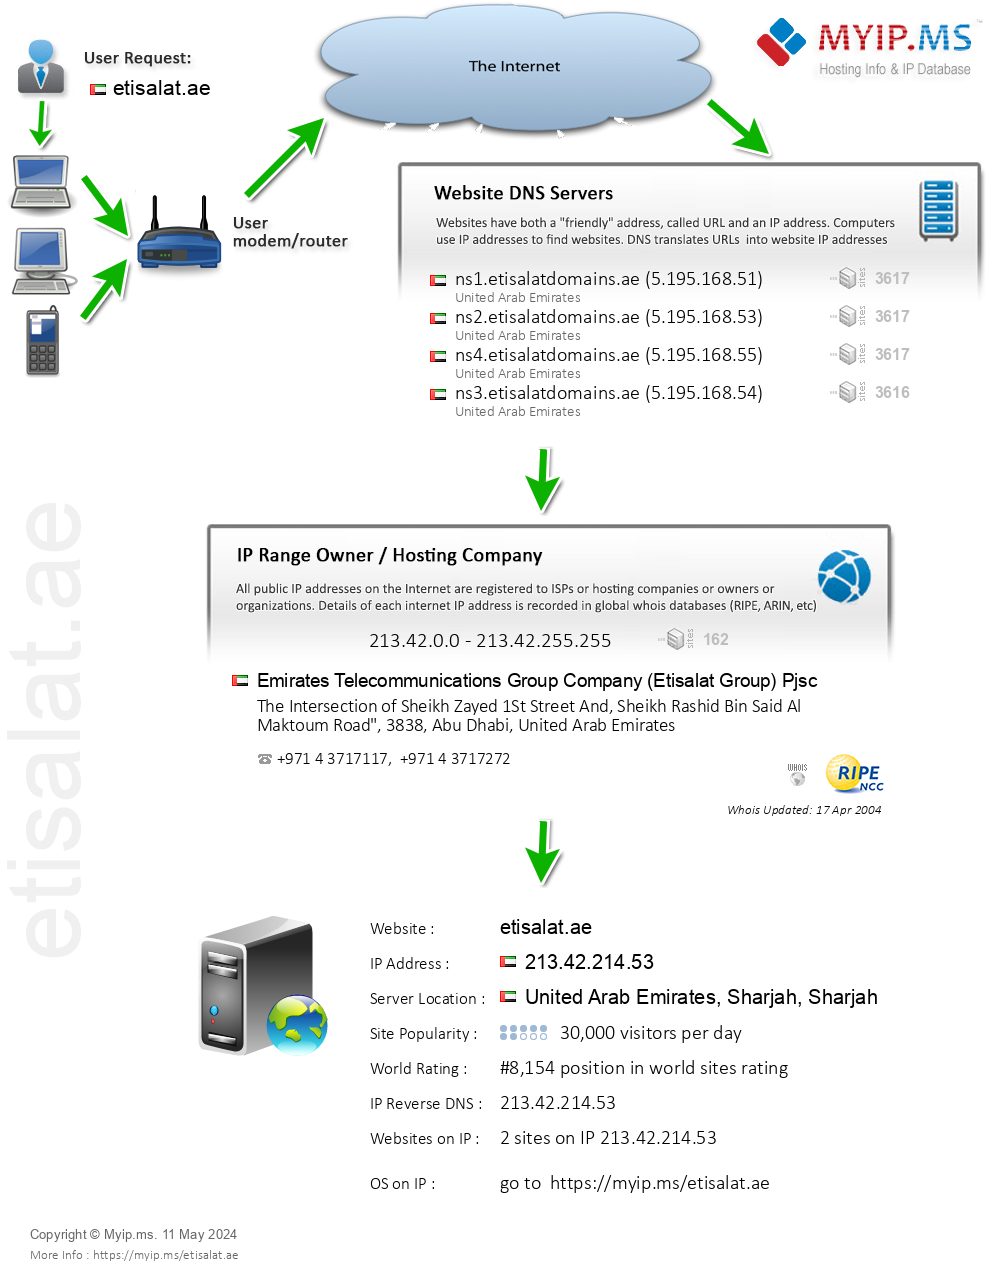 Etisalat.ae - Website Hosting Visual IP Diagram